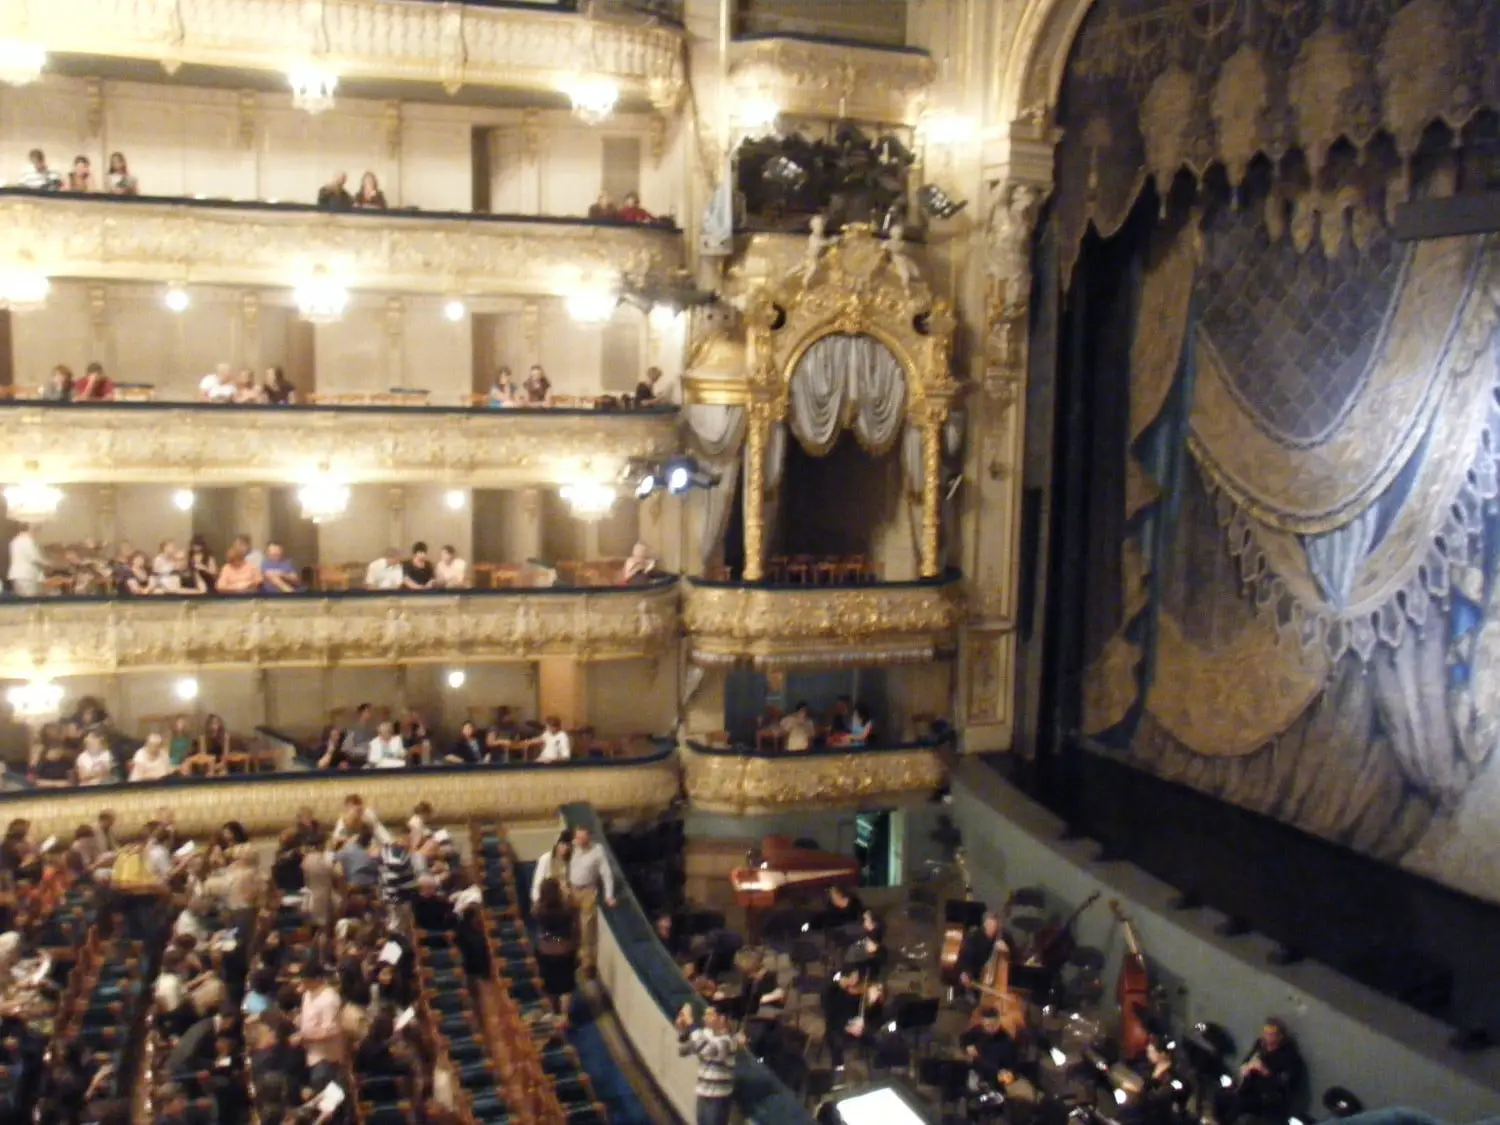 The famous Mariinsky curtain